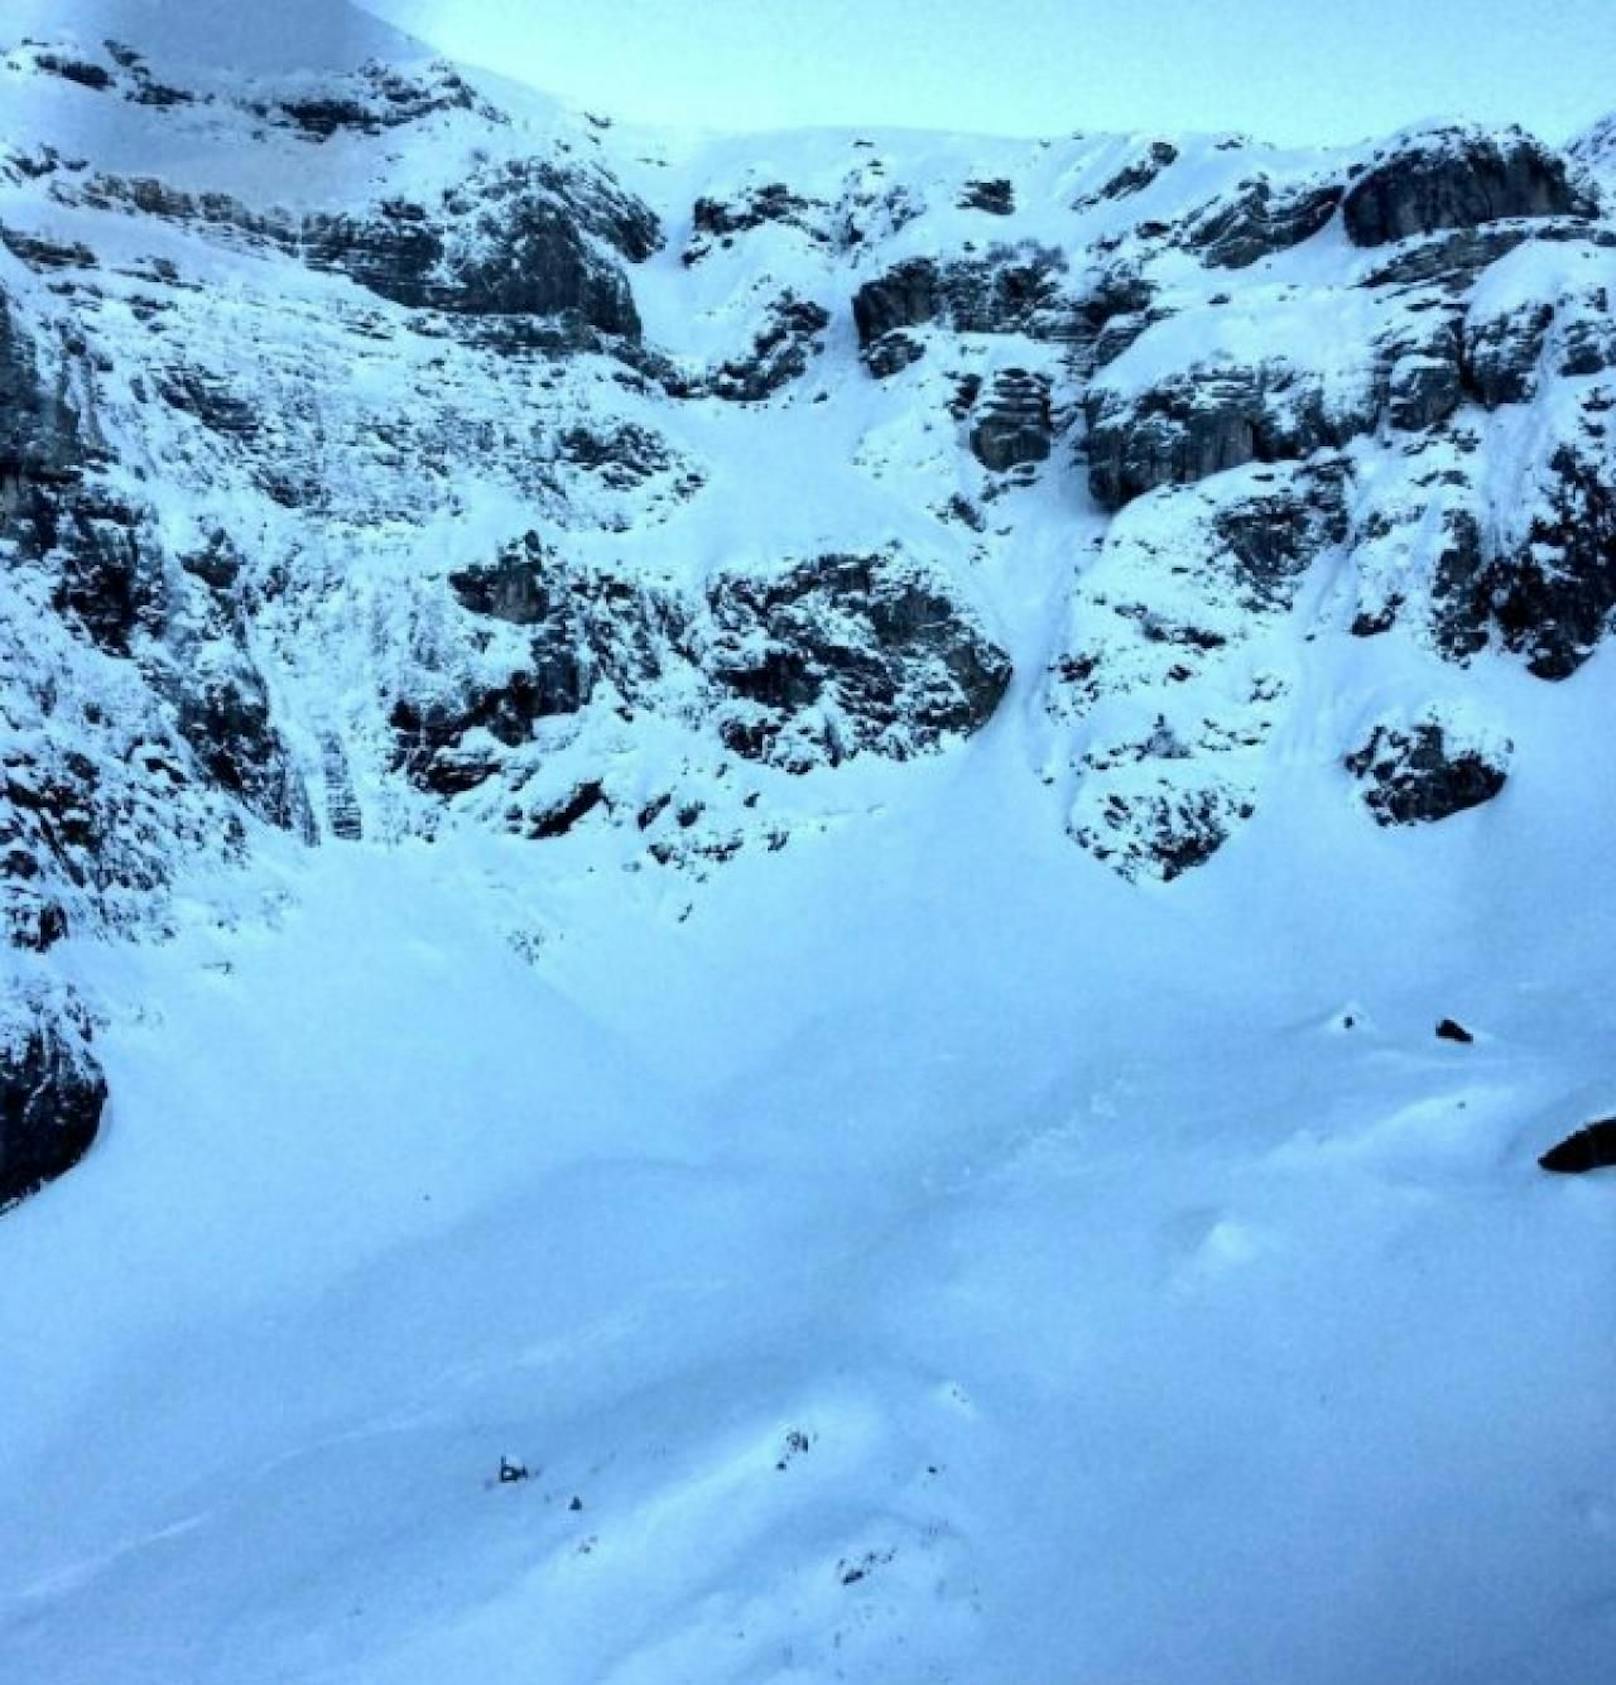 Am Dienstag (1.1.2019) ist ein 63-jähriger Mann im Schweizer Gebiet Chäserrugg abseits des präparierten Winterwanderwegs abgestürzt und verstorben. 